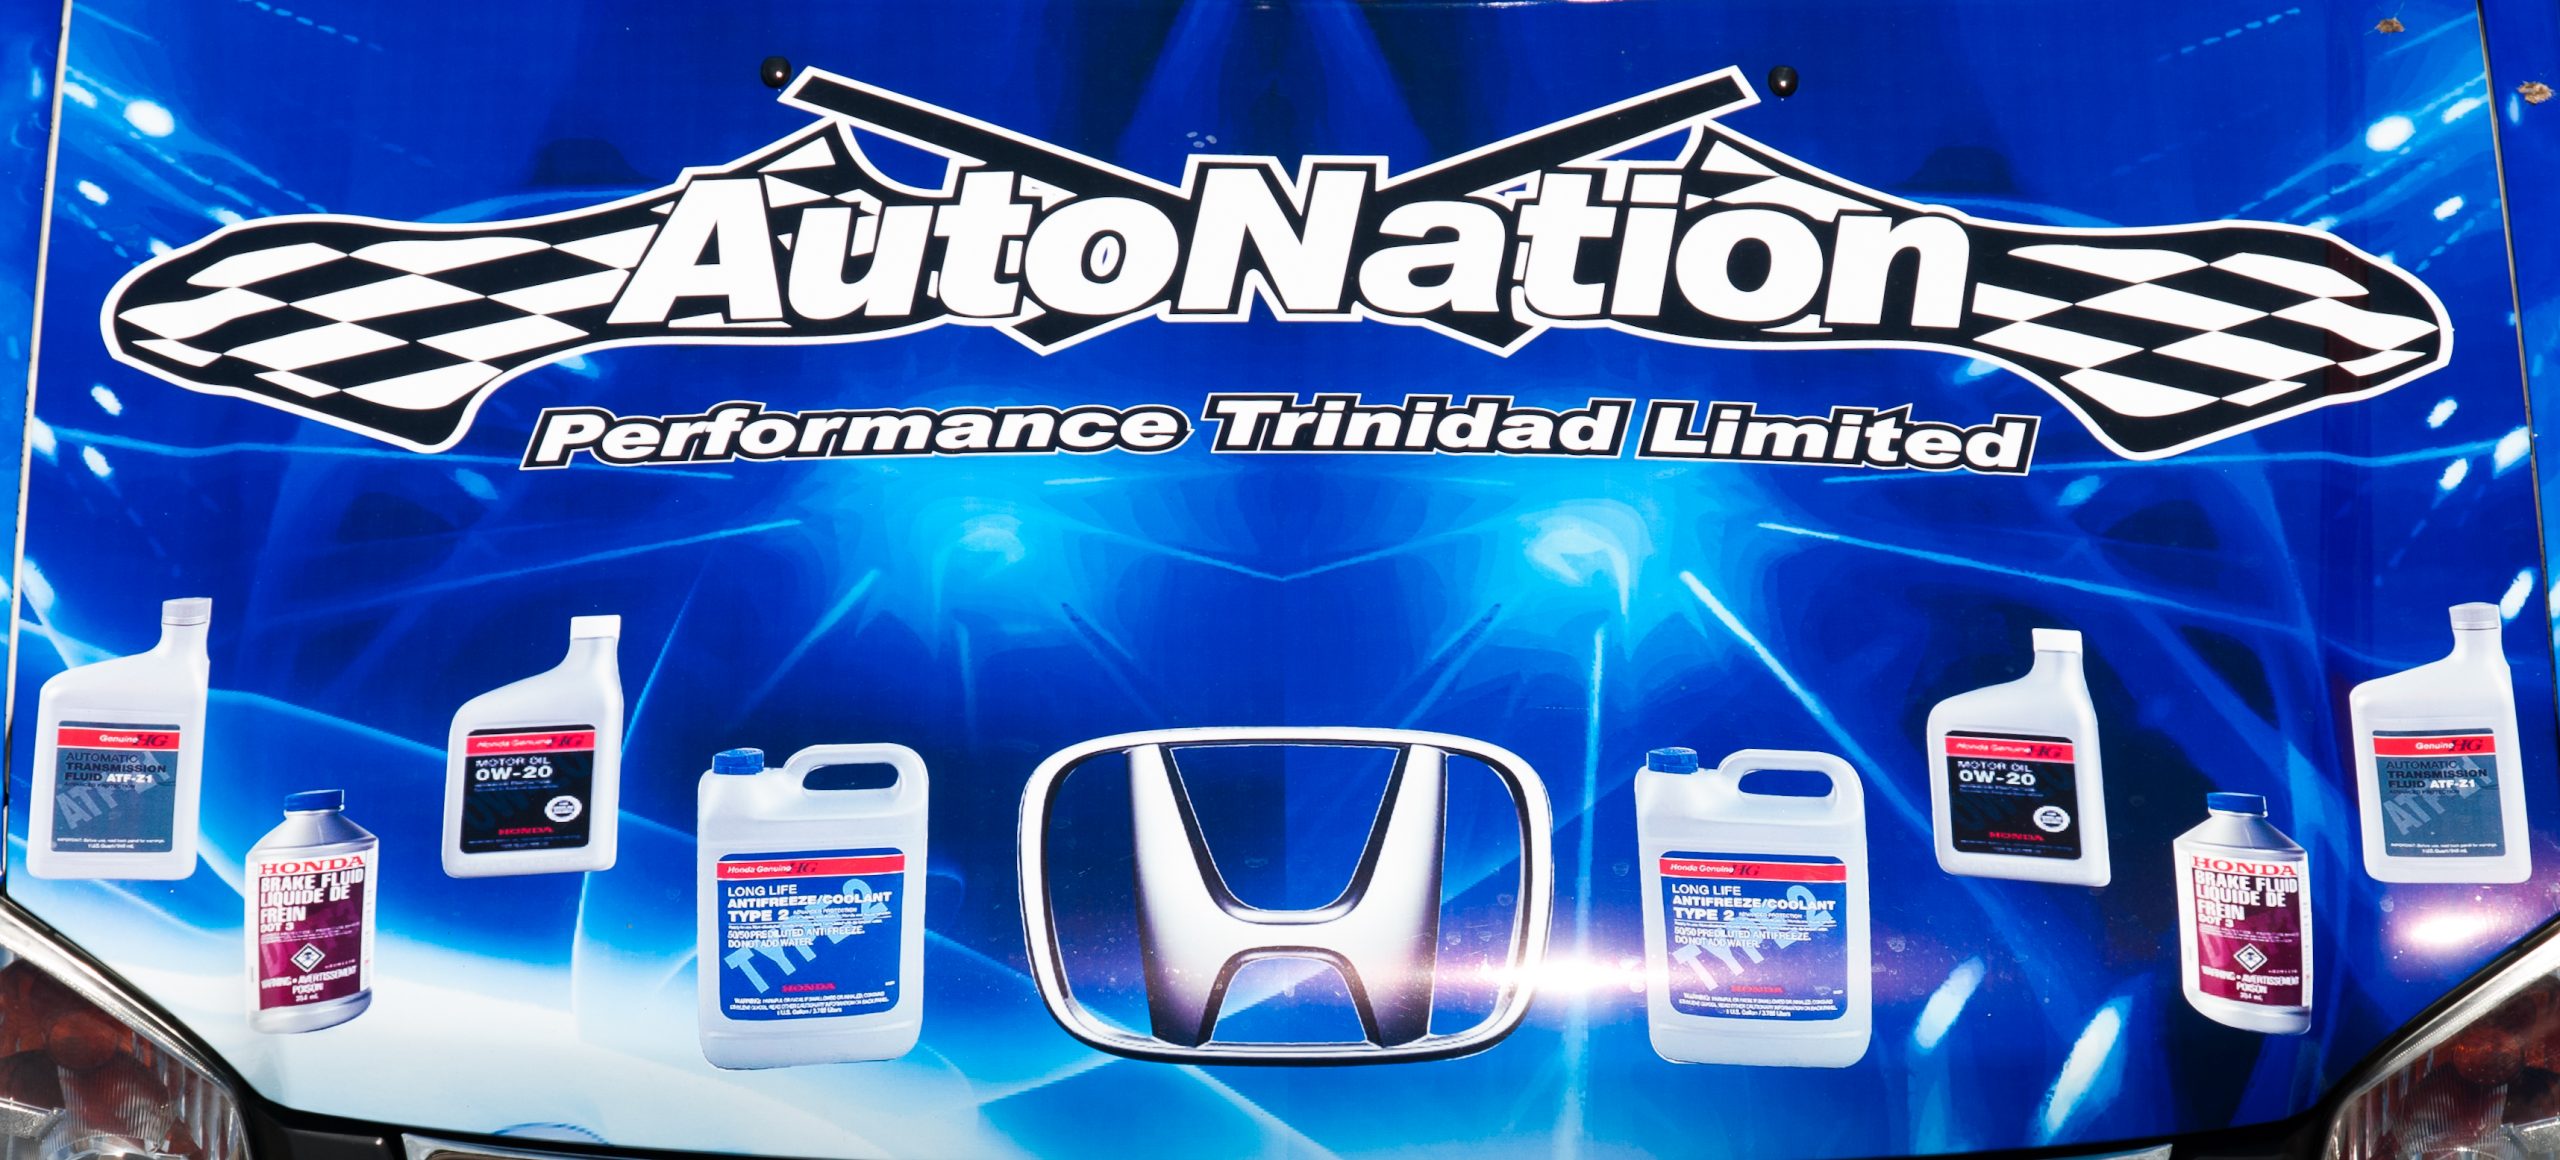 AutoNation Performance Trinidad Limited